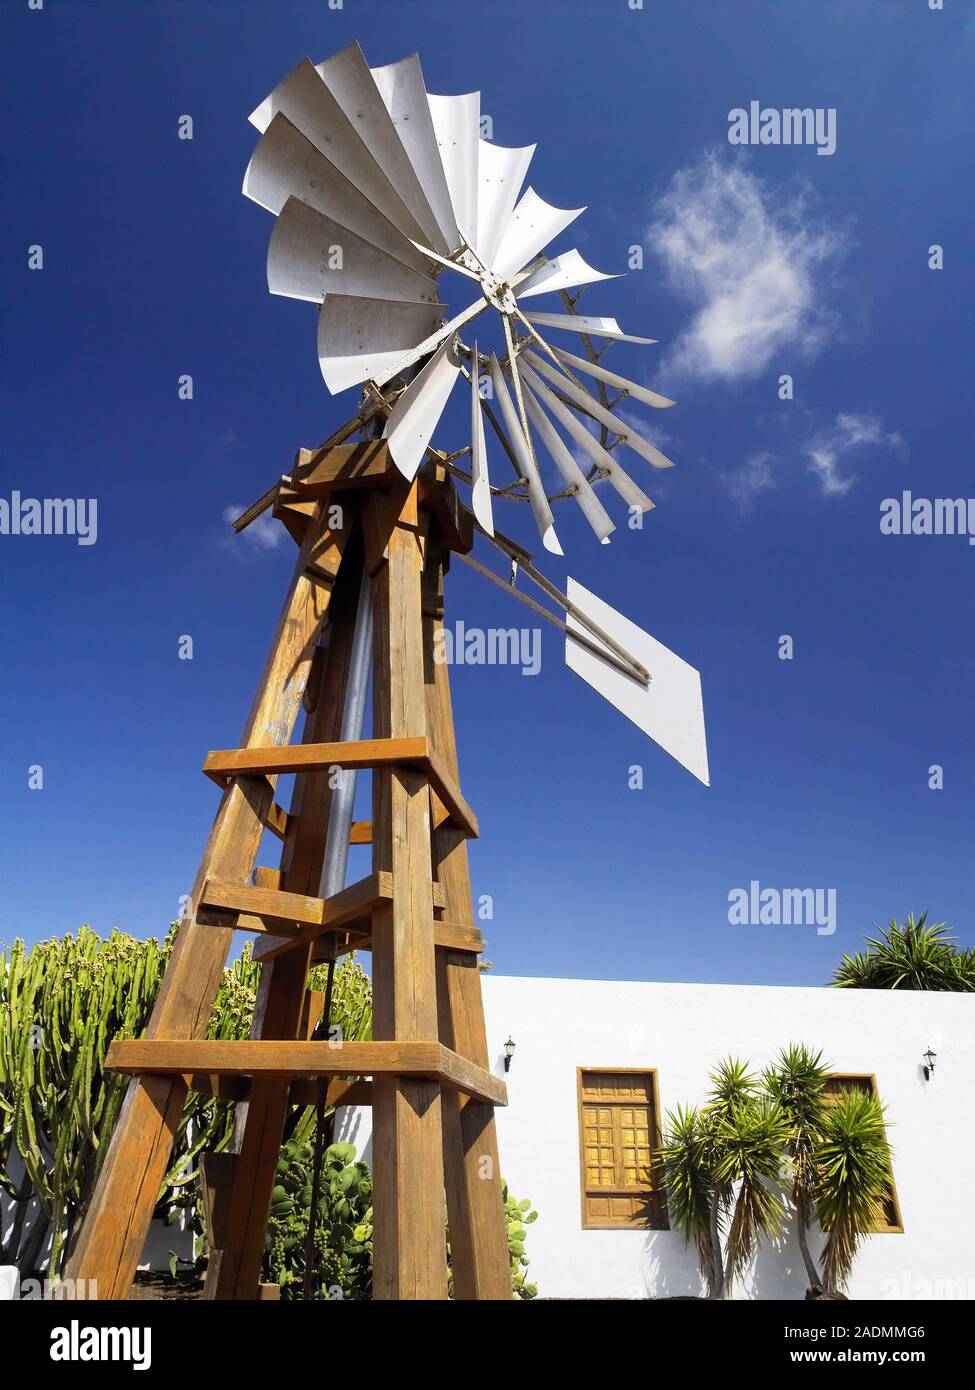 El molino de viento. Este es un pequeño molino de viento, montado sobre un  soporte. Las velas están diseñadas para girar en el viento y proporcionan  energía. Los pequeños molinos de viento